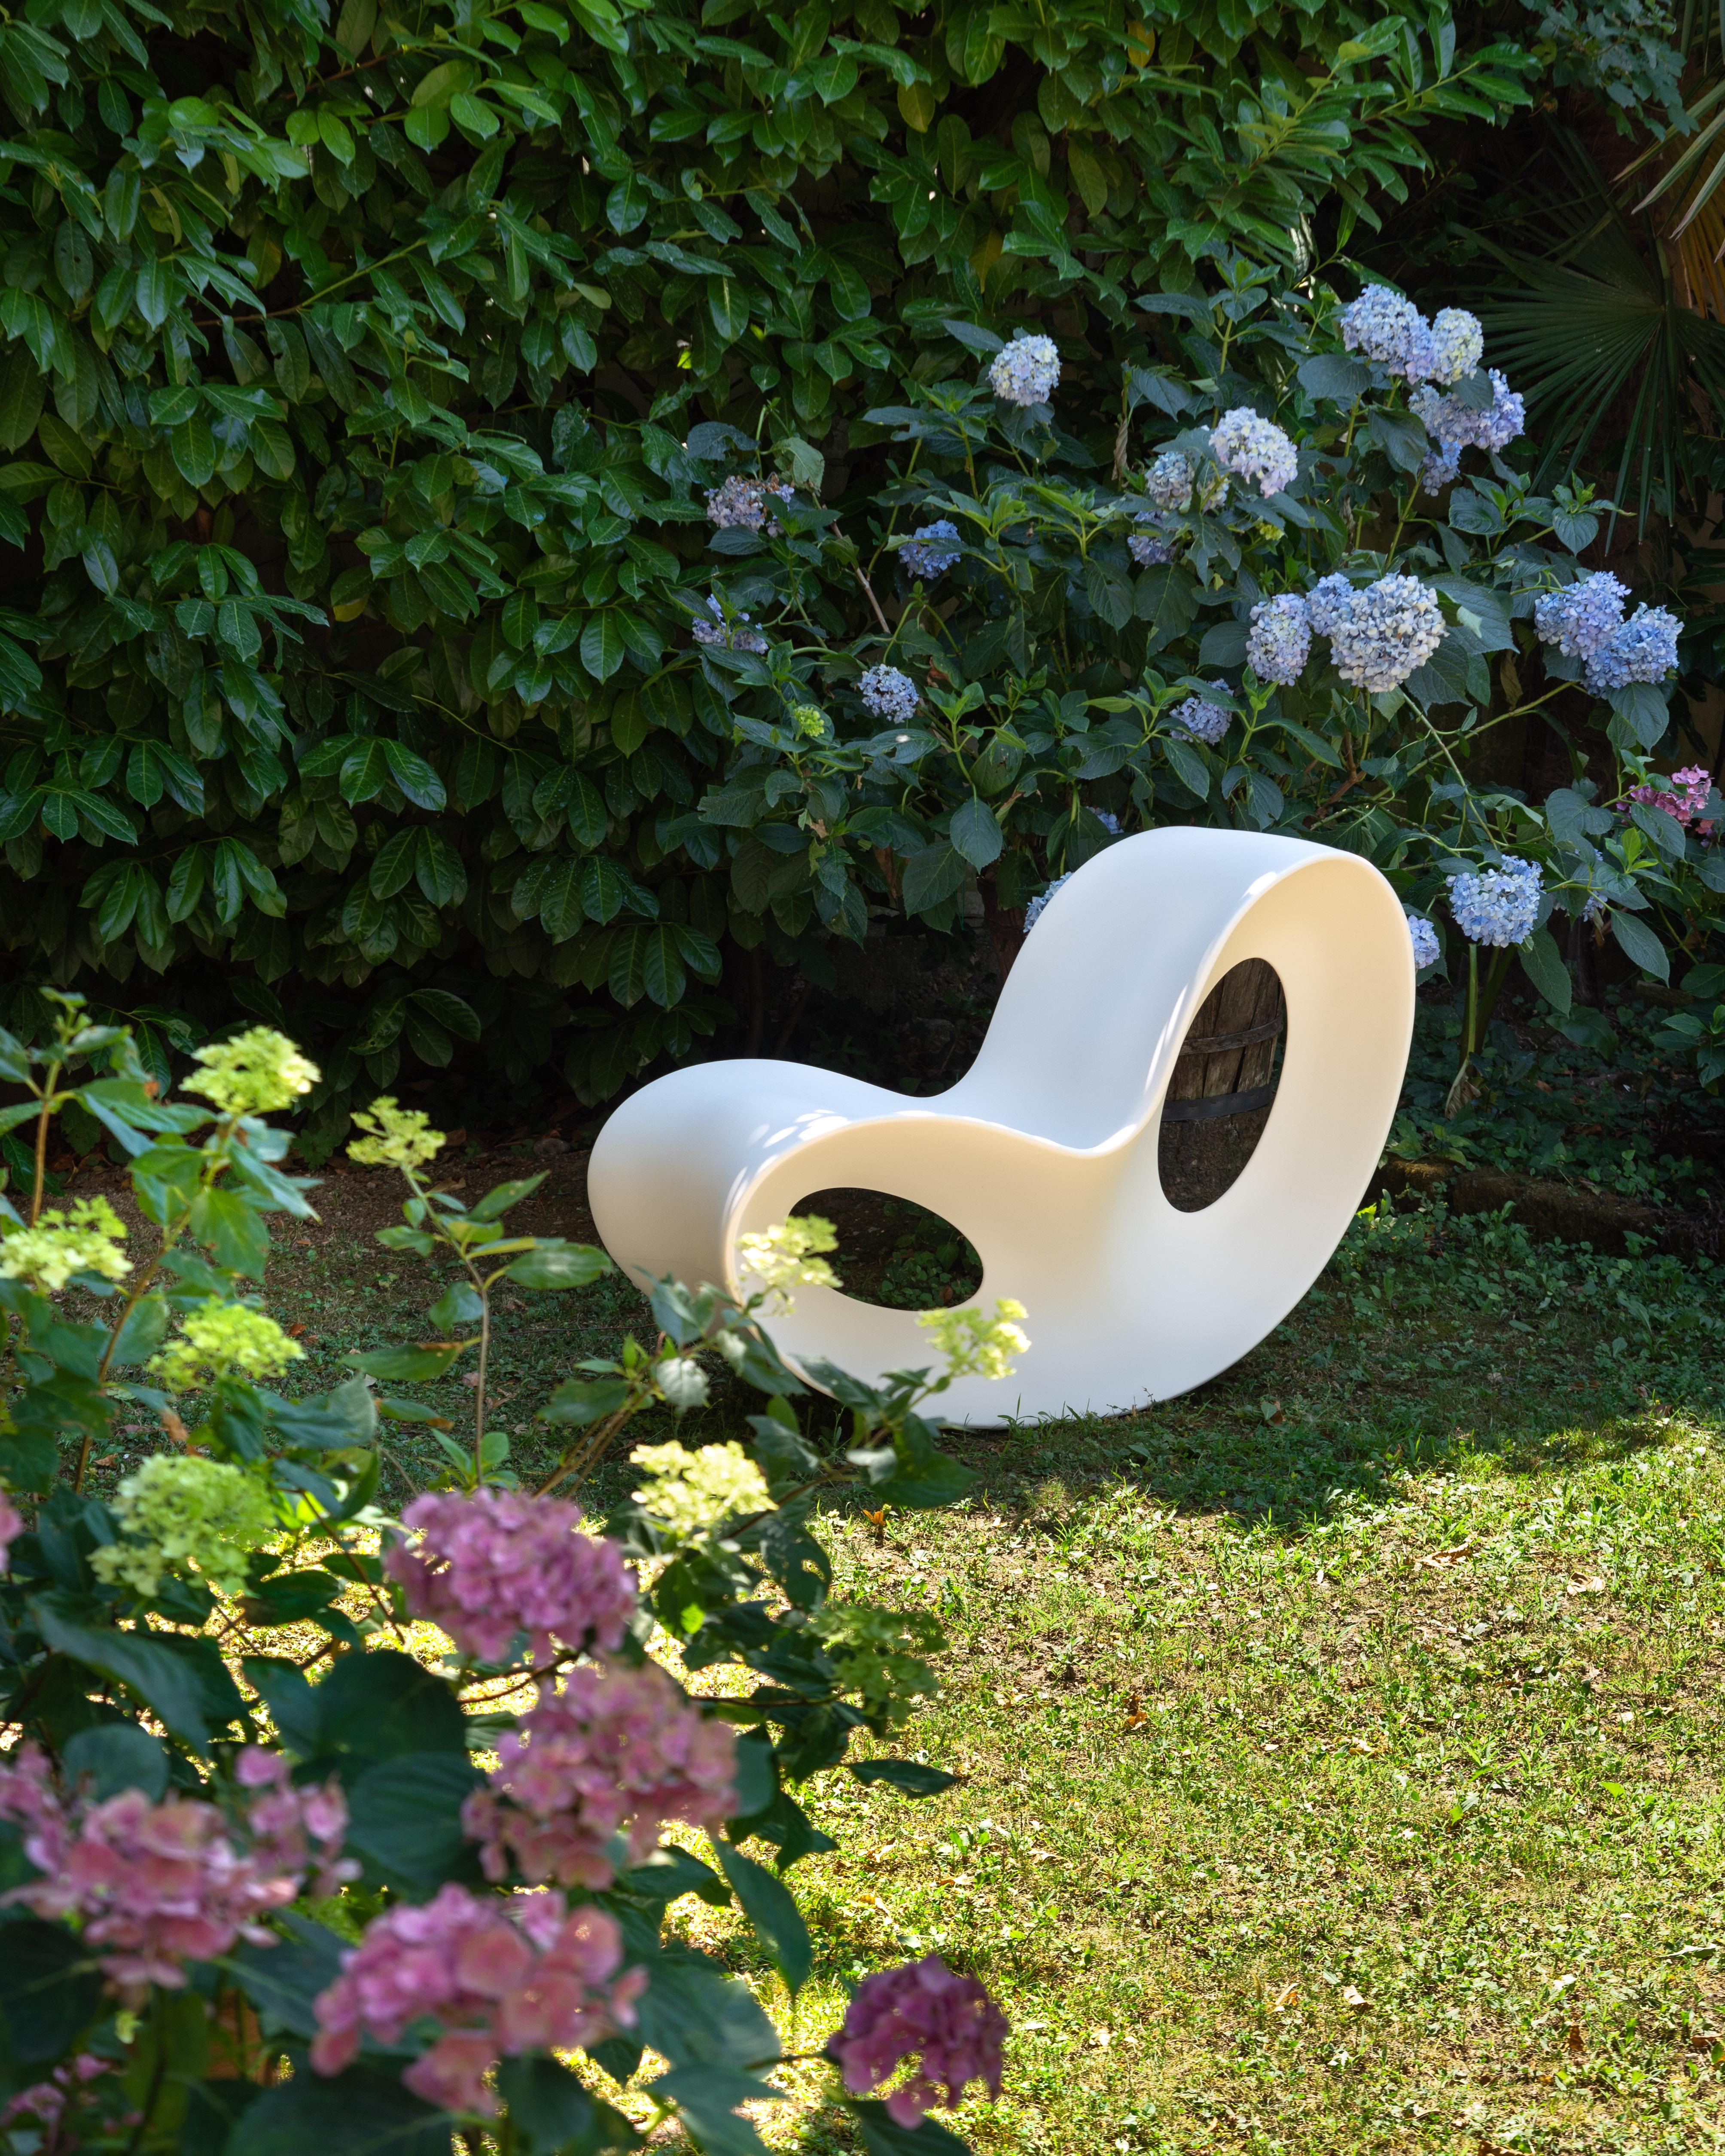 Créé par Ron Arad, l'un des plus grands designers de la scène internationale, avec son style magistral et non conventionnel, Voido est un fauteuil à bascule qui ressemble à une sculpture contemporaine, mais qui est fabriqué à l'aide d'une